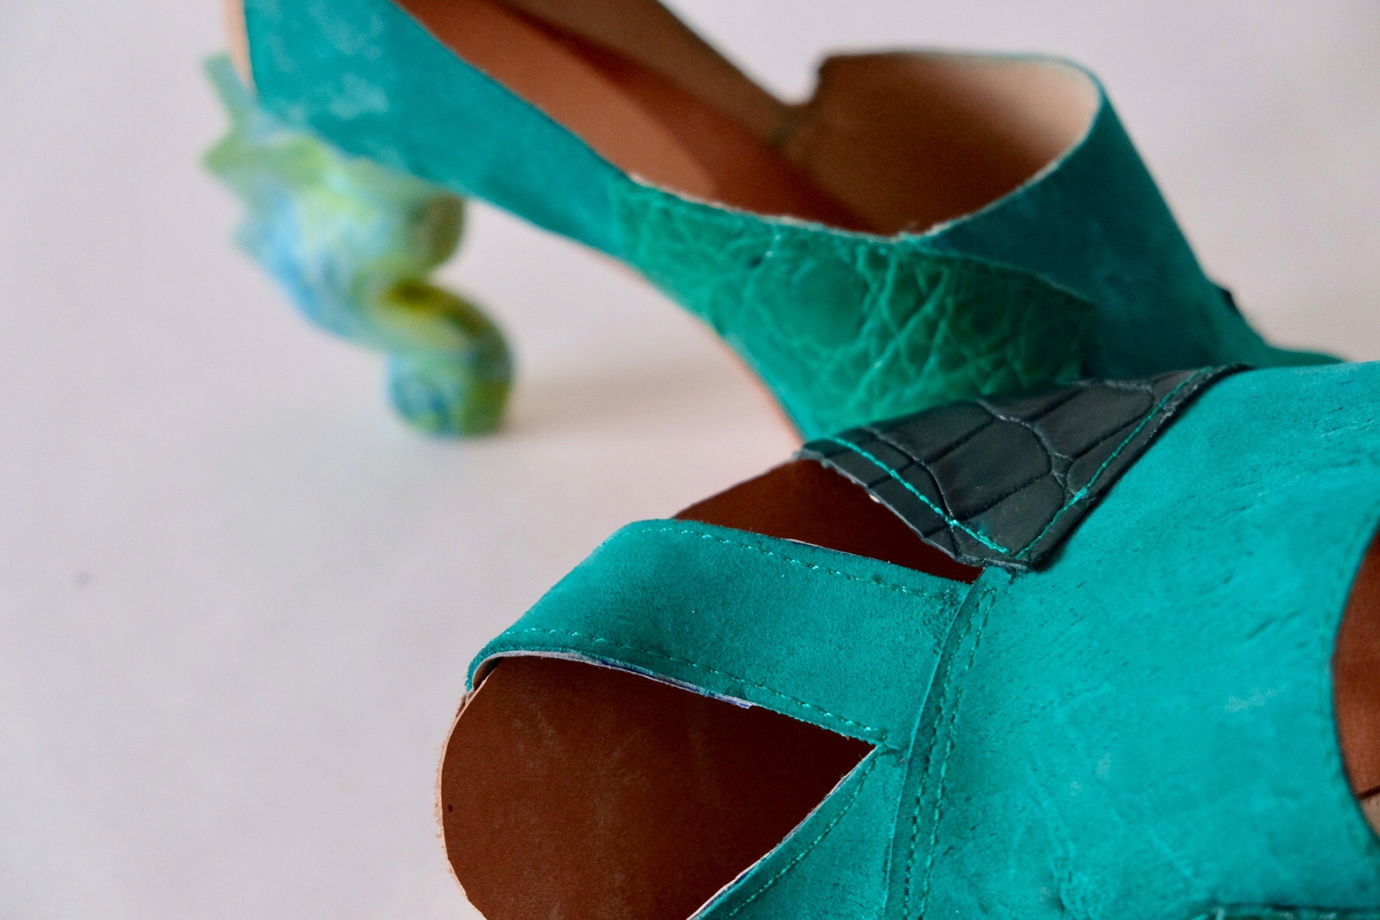 Зеленые туфли с динамическими каблуками "морской конек" и вставками из кожи крокодила. Размер 41.5